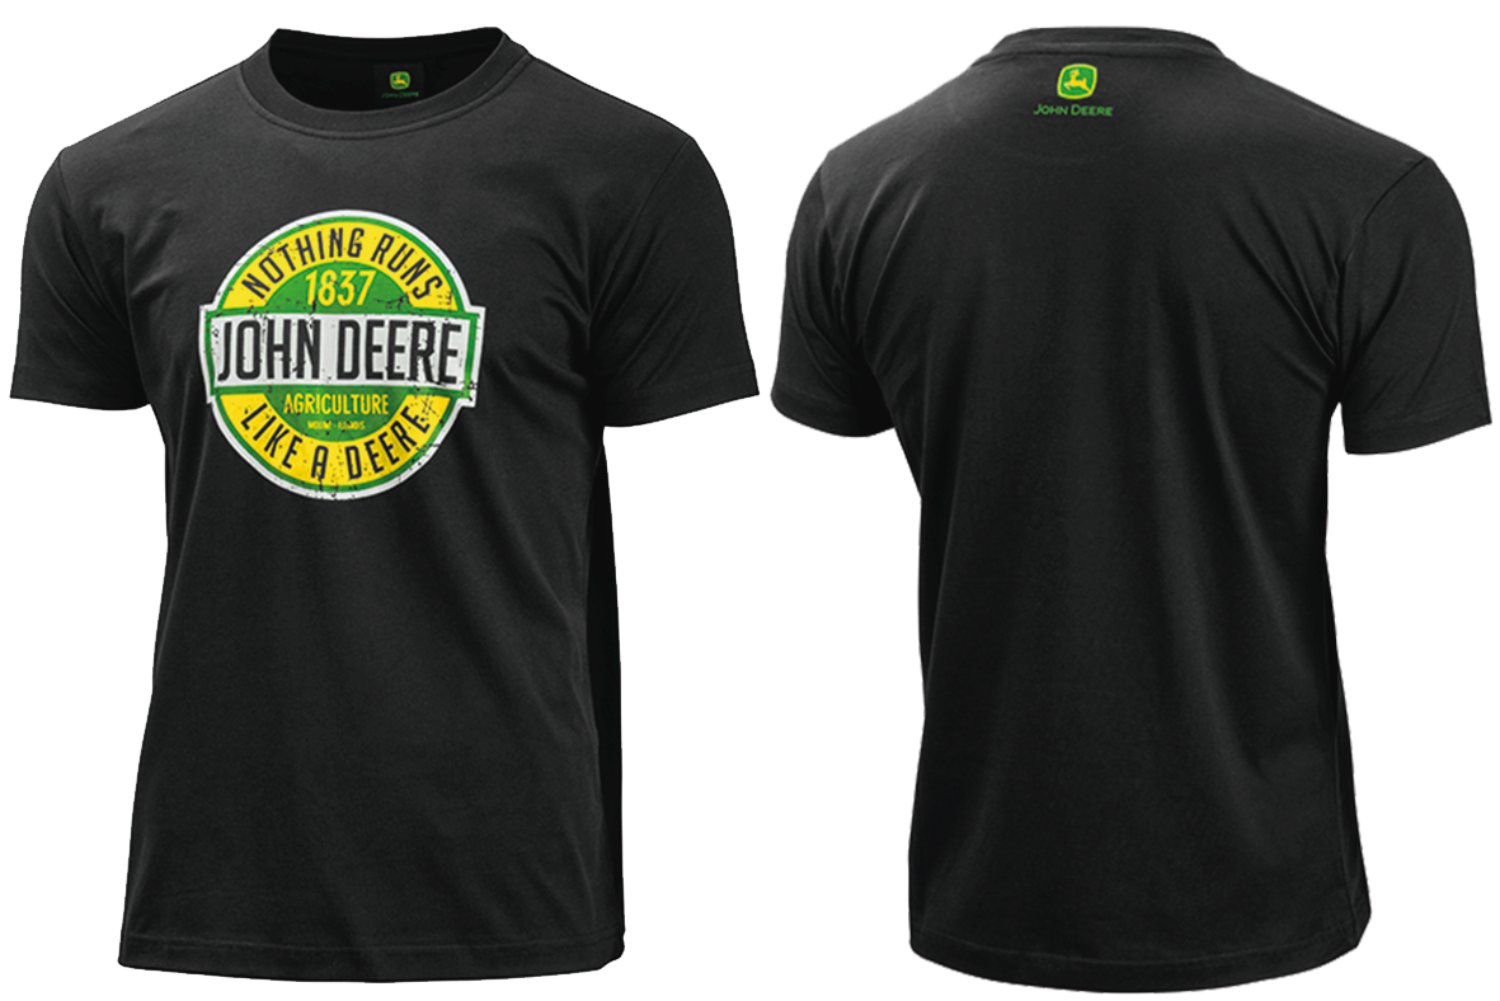 John Deere T-Shirt "Nothing Runs Like A Deere"